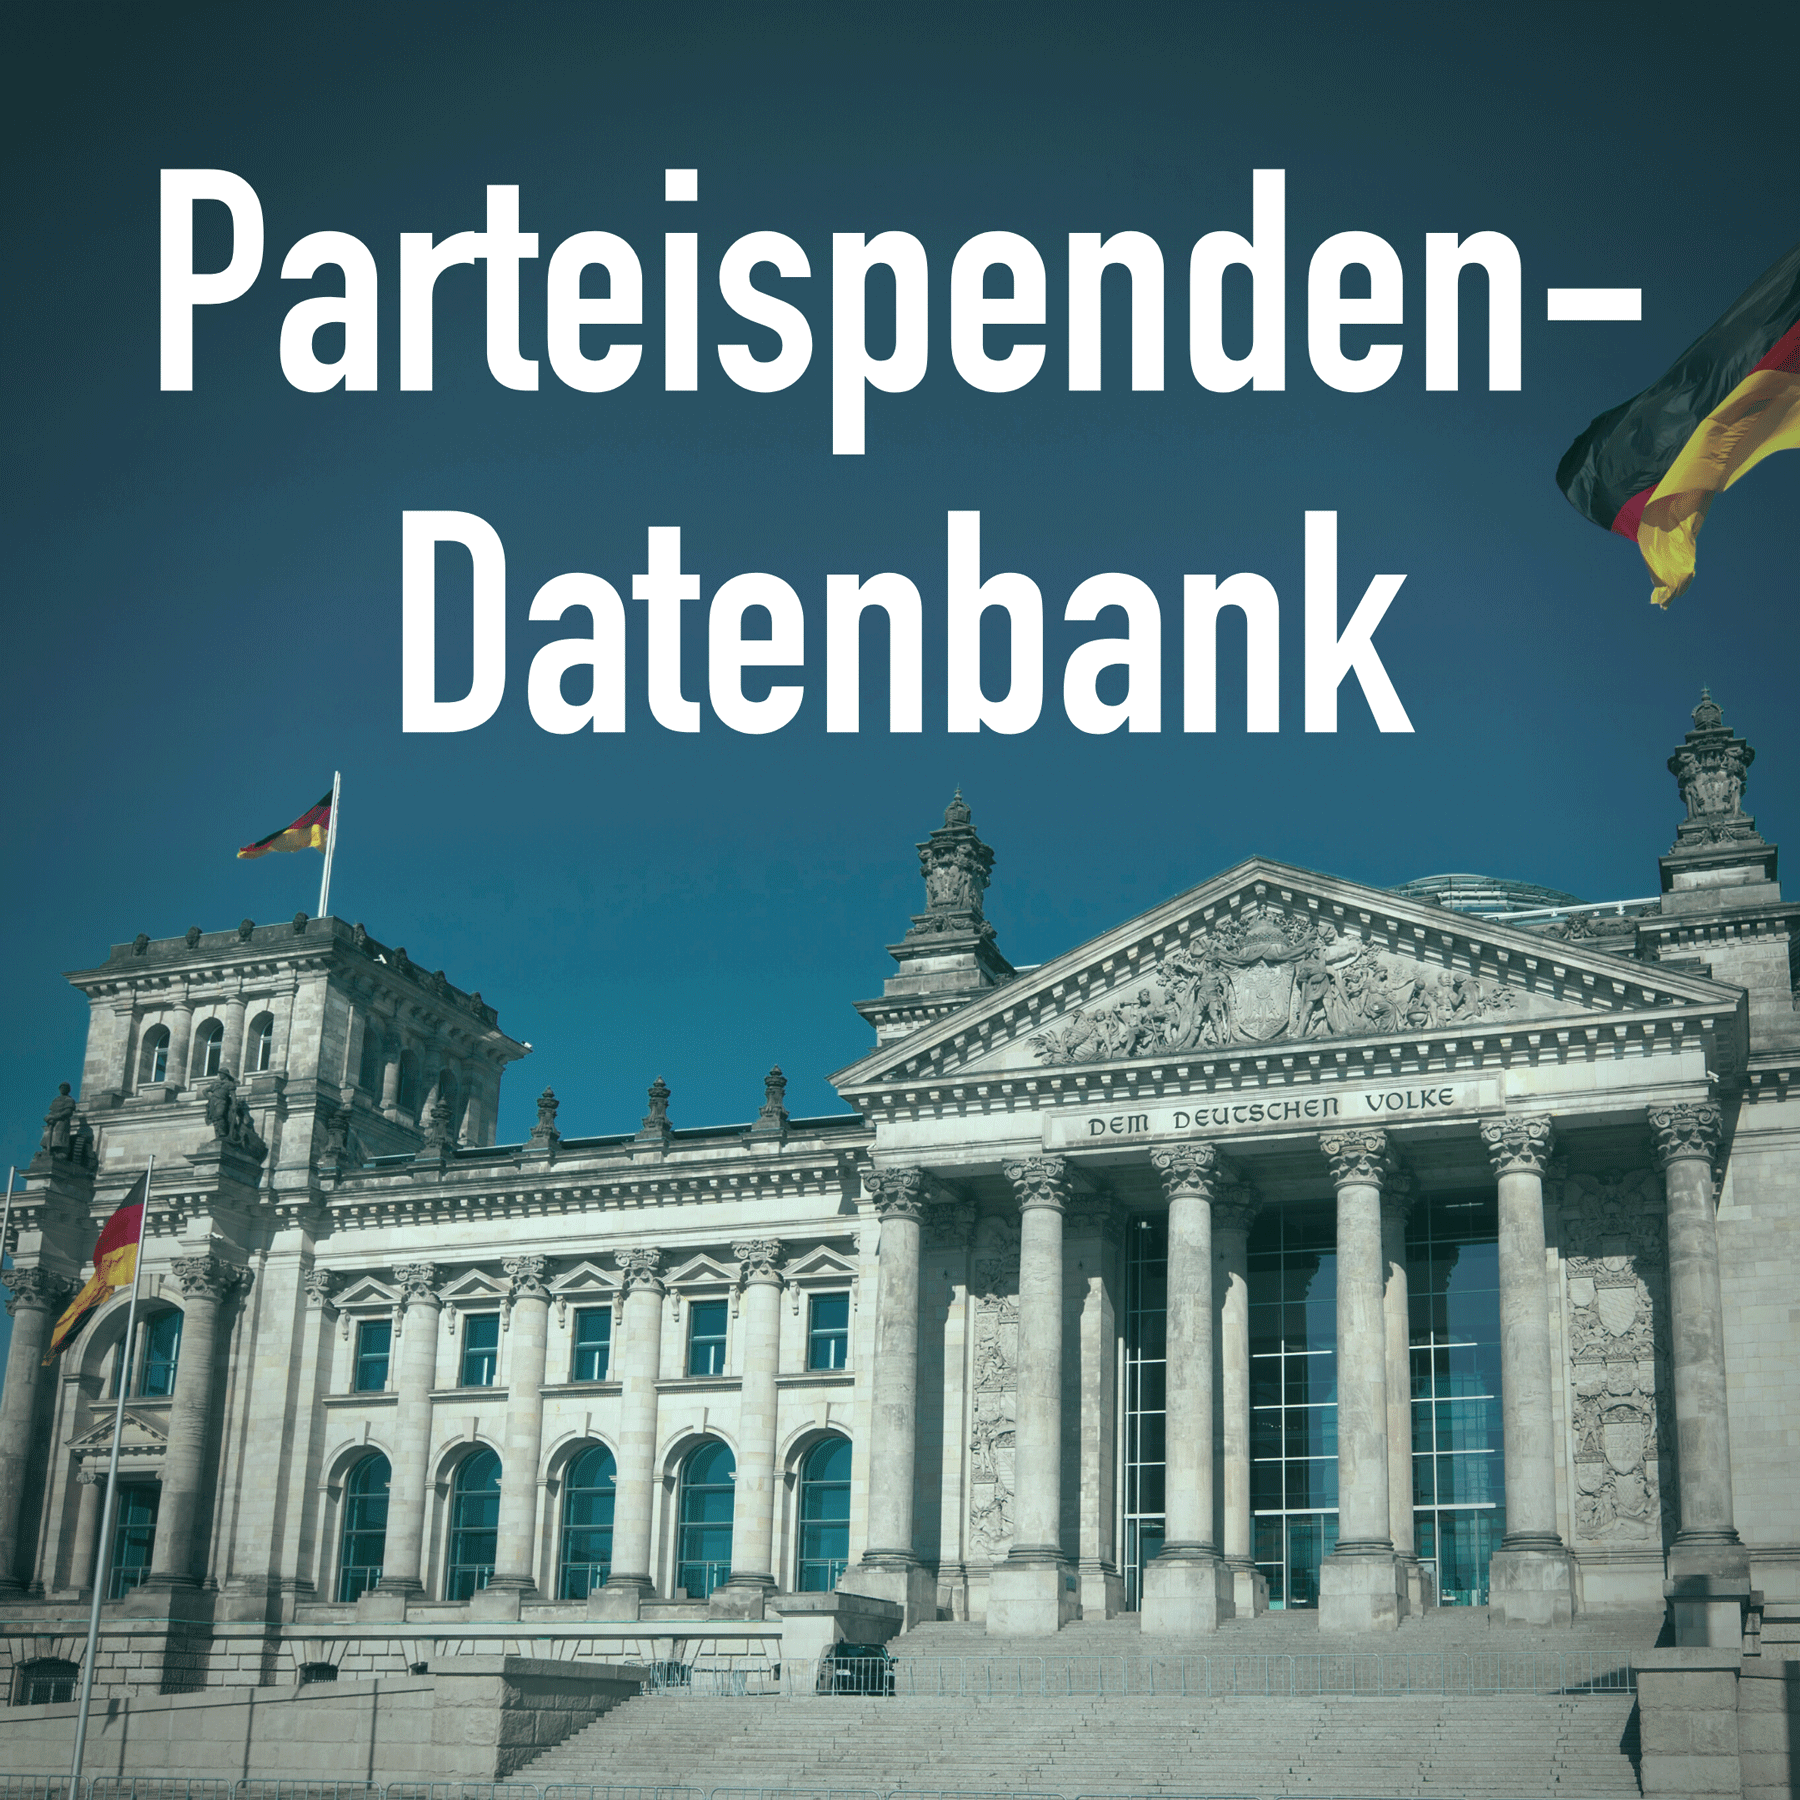 Bild Reichstagesgebäude vor blauem Himmel, eine grafische Aufschrift über dem Bild: Parteispenden-Datenbank